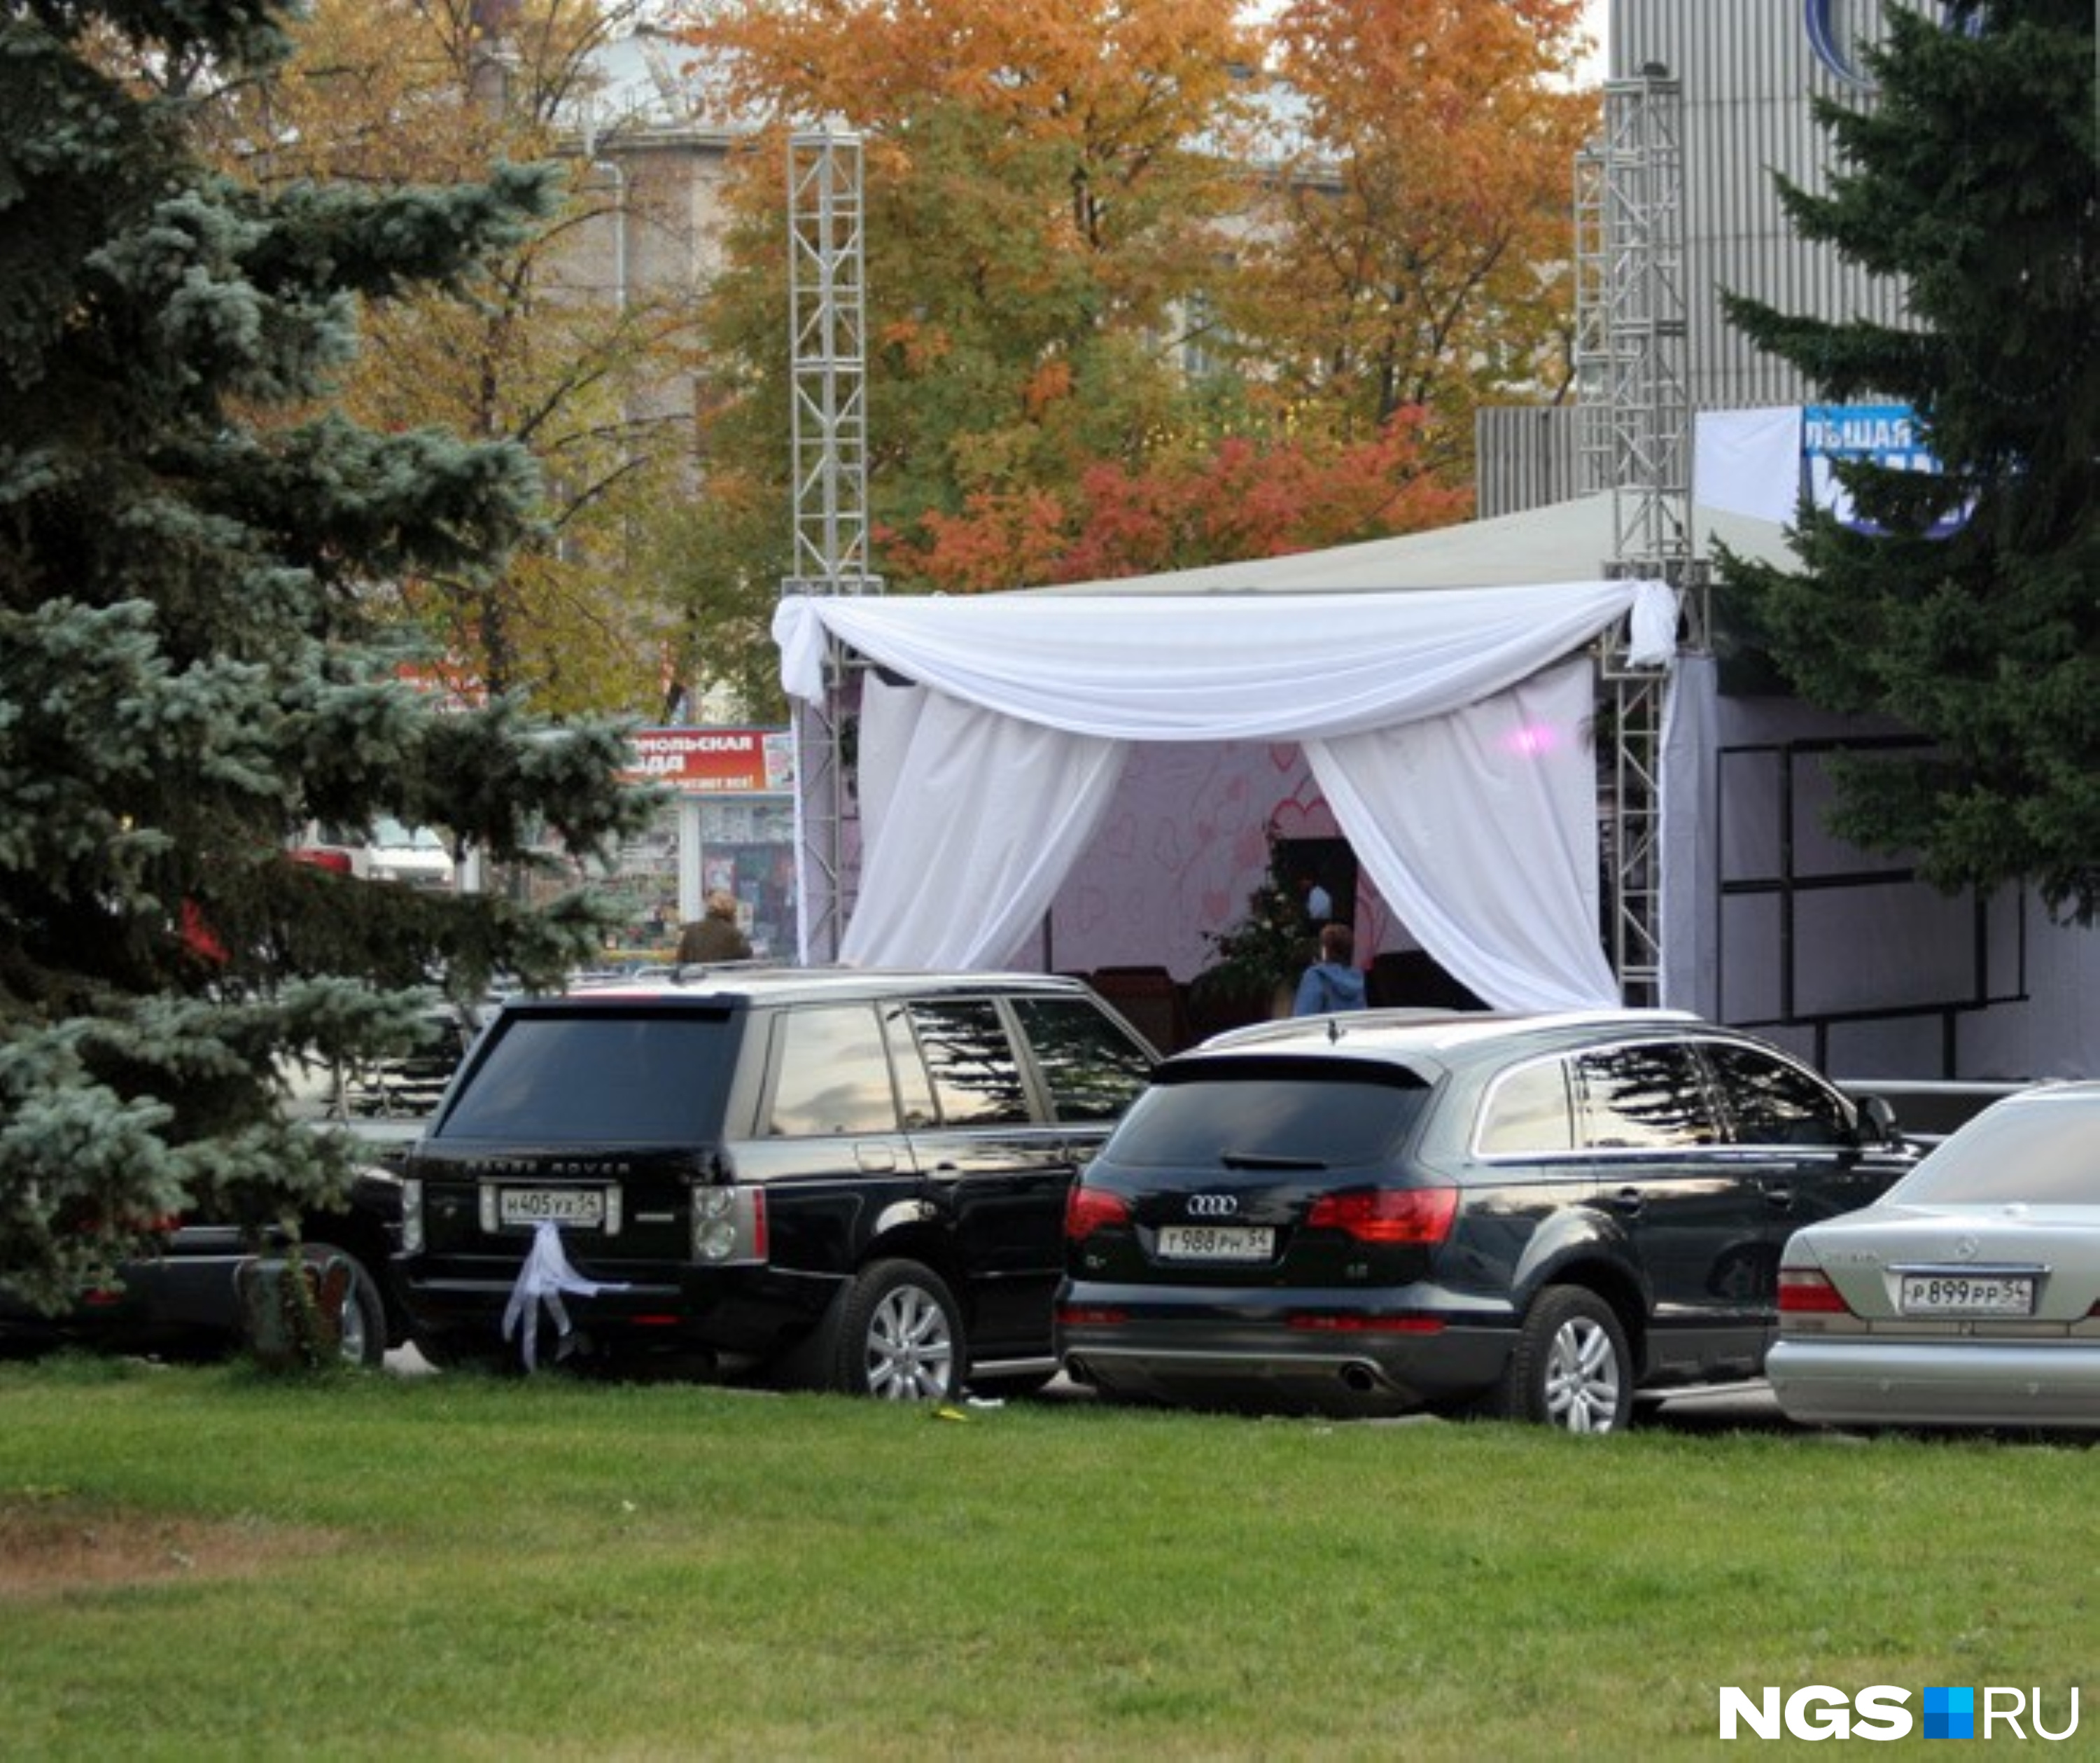 Перед входом в клуб «Отдых» выстроили специальный шатер, удачно скрывающий от посторонних глаз всех, кто встречал гостей